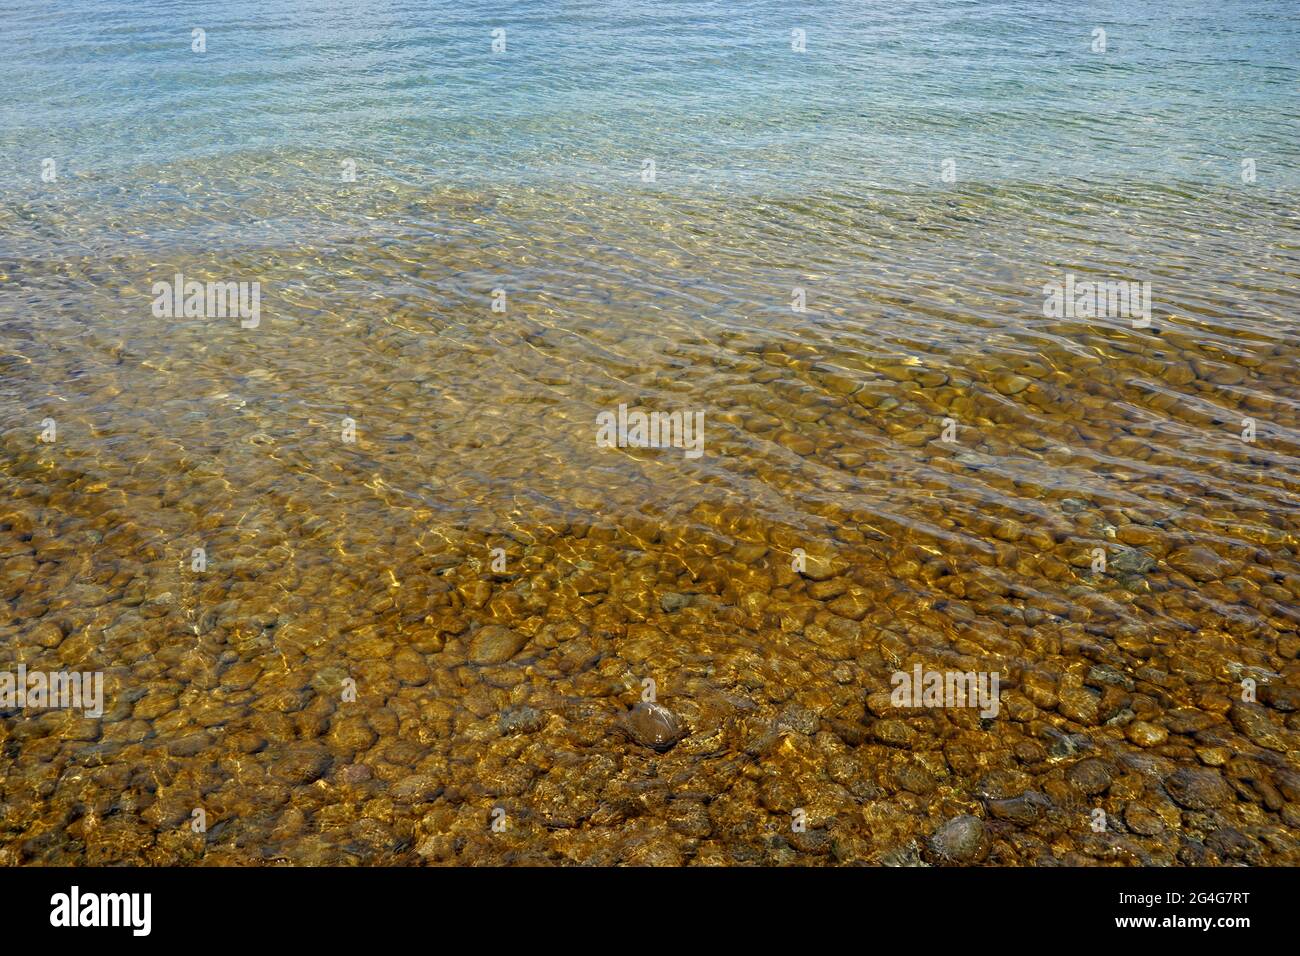 Eau peu profonde du lac de Constance avec pierres rondes sur le fond. Convient à un environnement naturel ou saisonnier. Banque D'Images